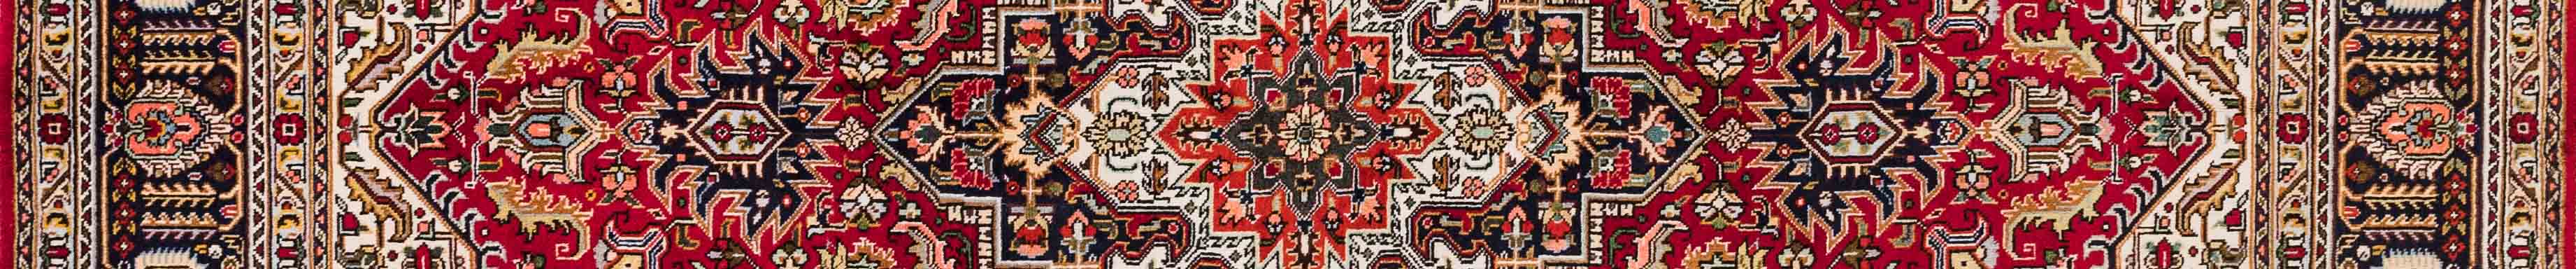 Tabriz Persian Carpet Rug N1Carpet Canada Montreal Tapis Persan 1950